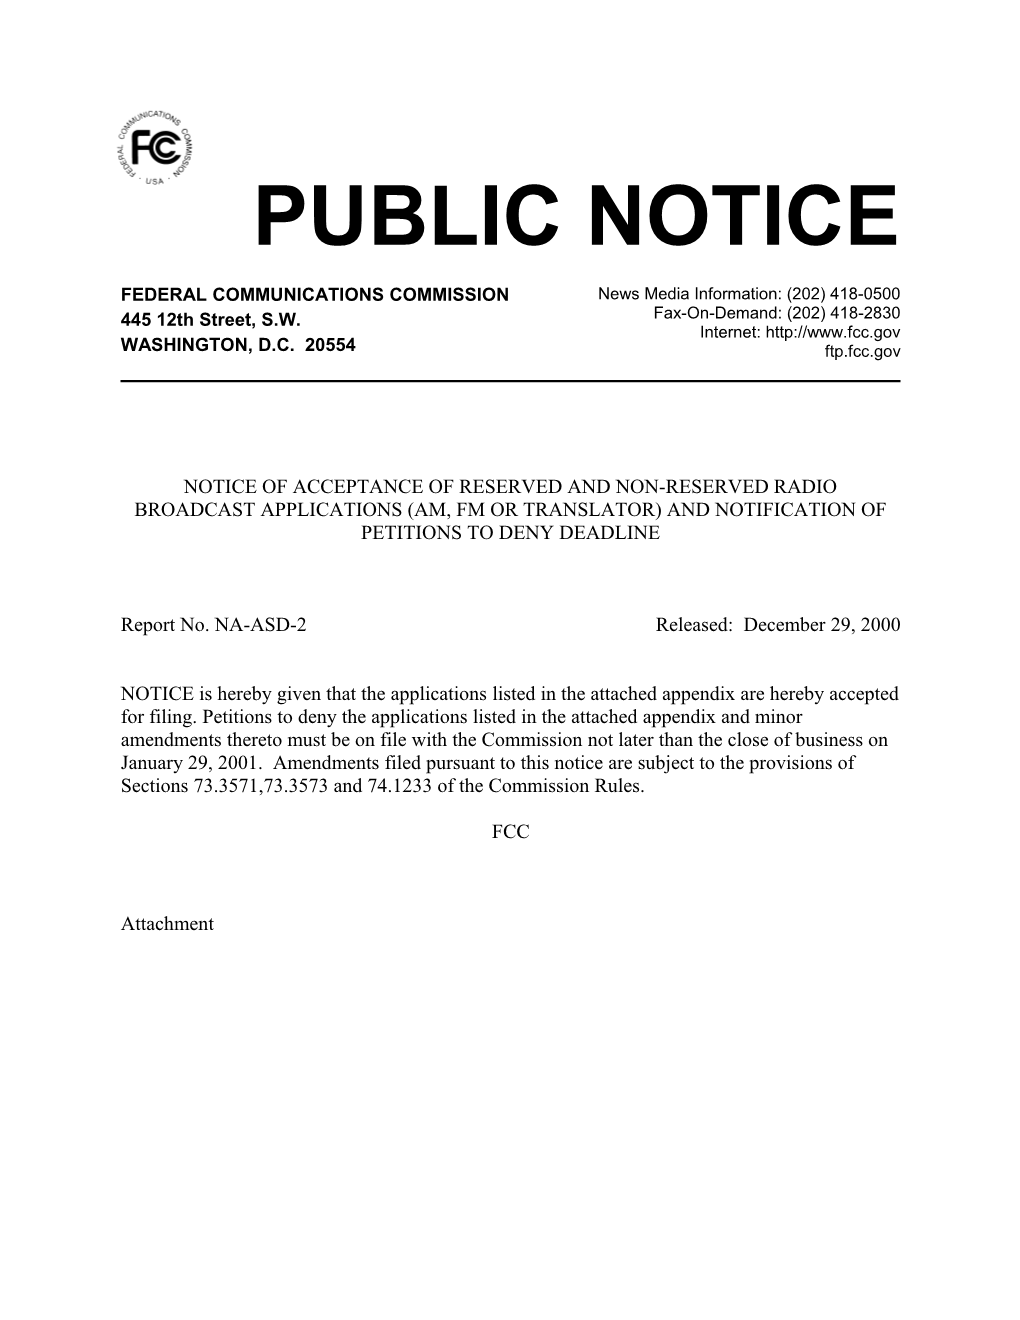 Public Notice s3